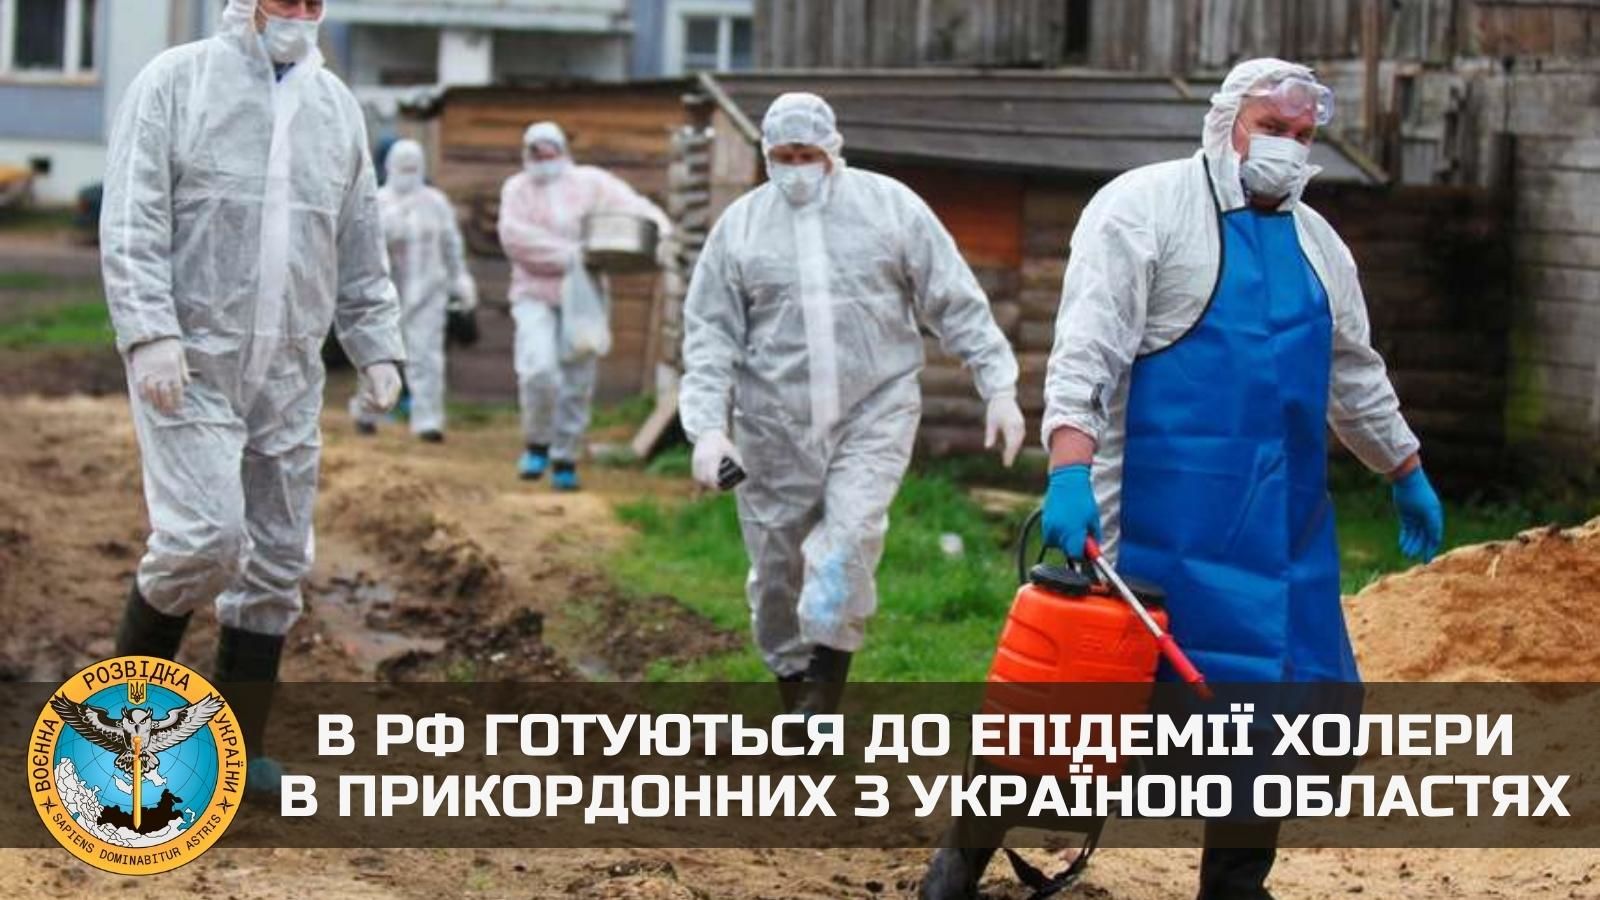 Власти России готовятся применить против своего населения биологическое оружие, запугав холерой